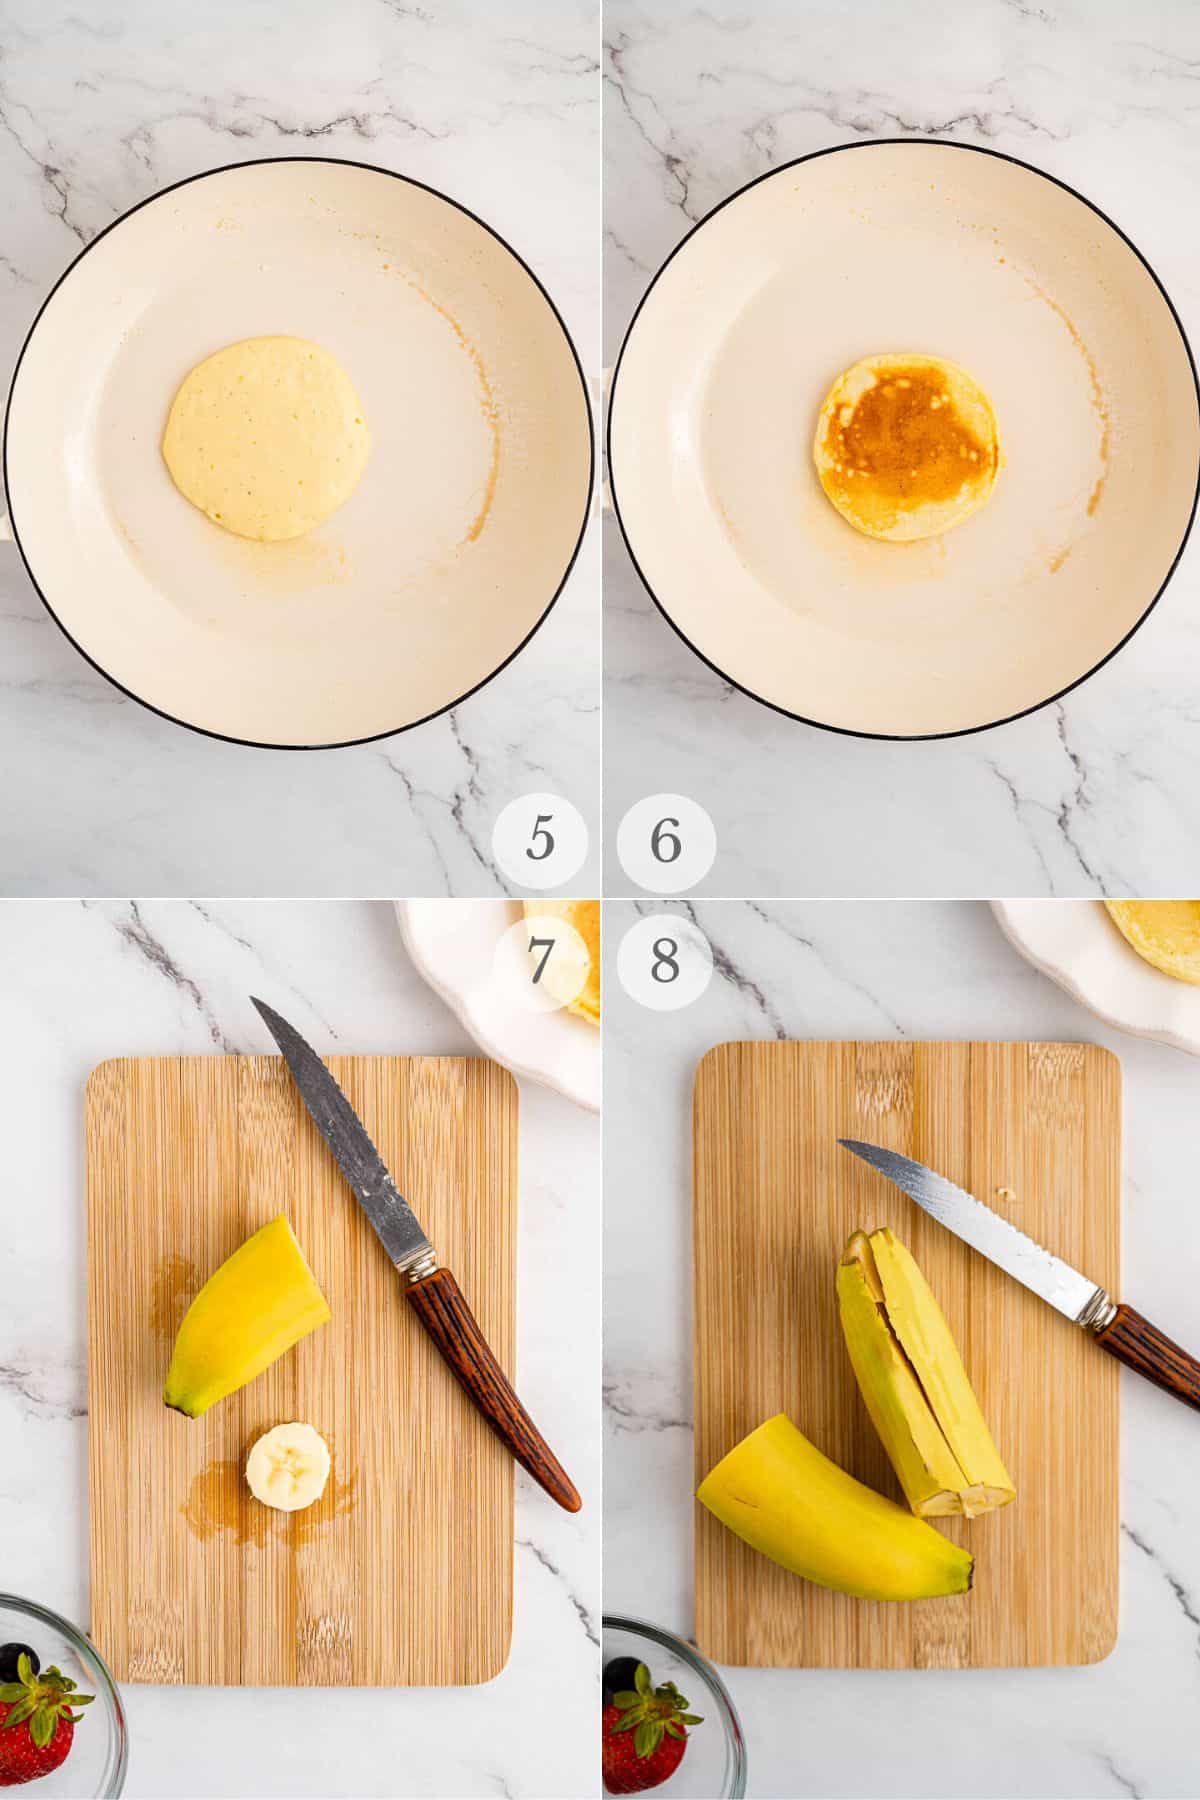 bunny pancakes recipe steps 5-8.